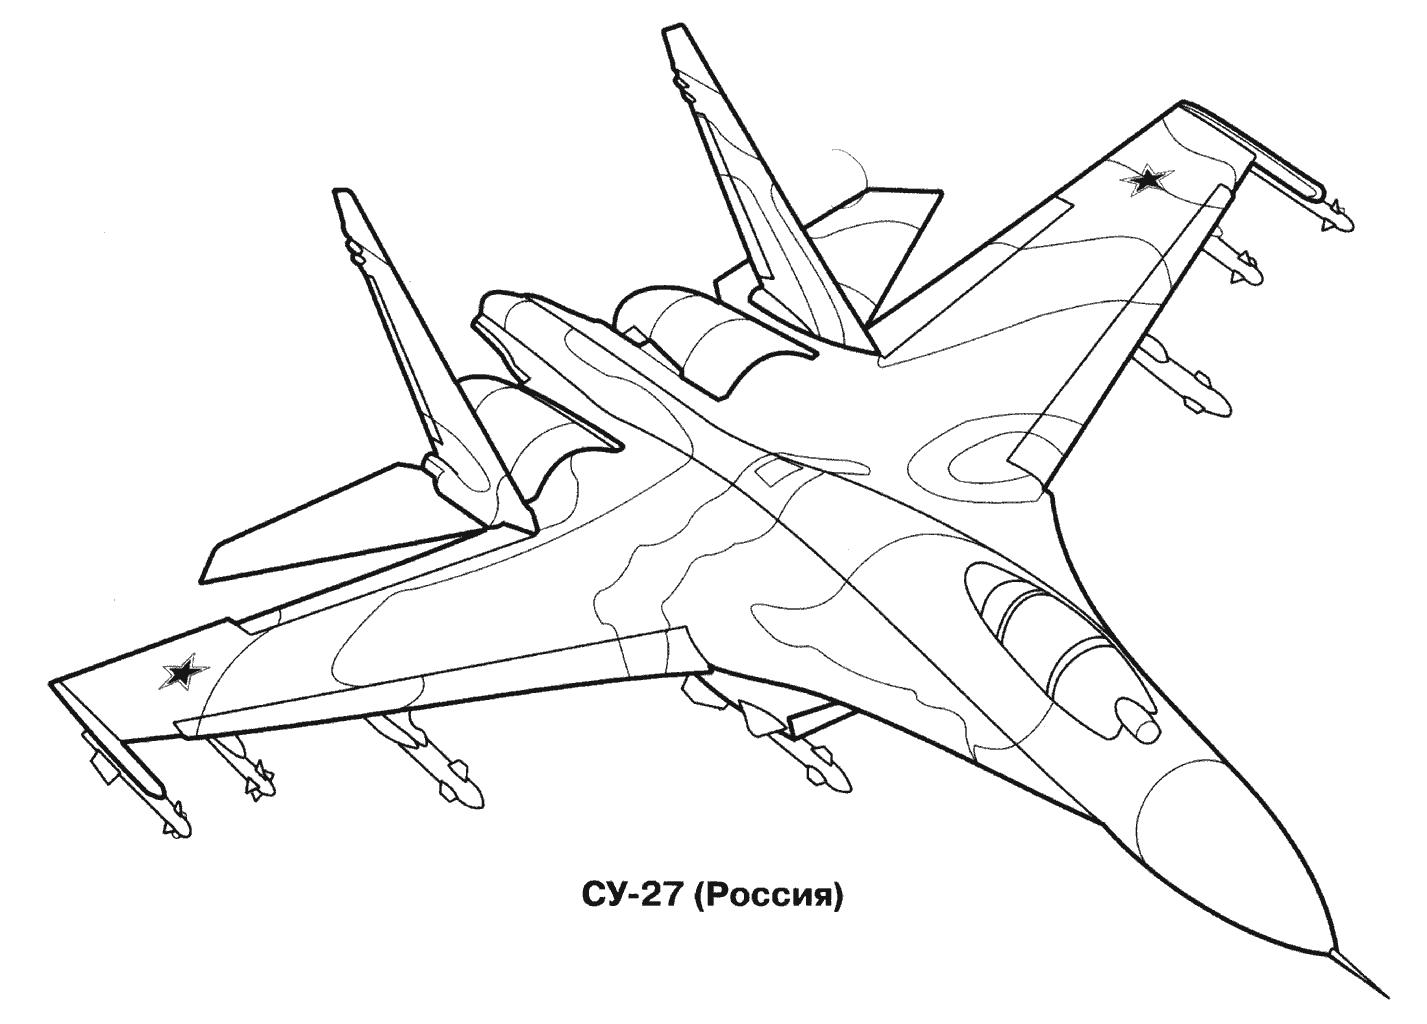 Раскраски Су-27 для мальчиков - веселое и развивающее занятие (Су-27, занятие)